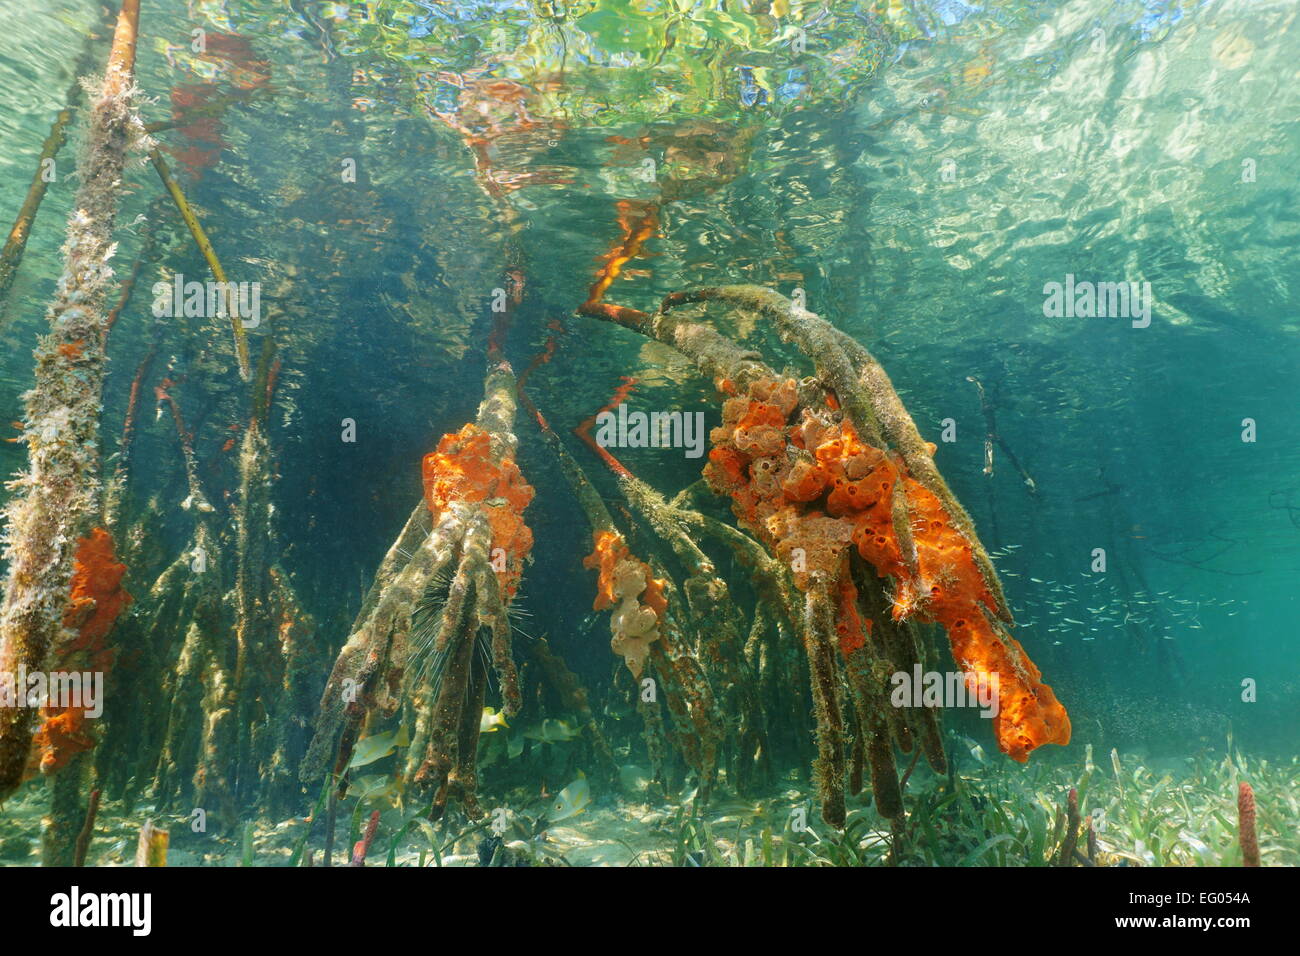 Les racines de palétuvier rouge sous l'eau avec les éponges perforantes, mer des Caraïbes, le Panama Banque D'Images